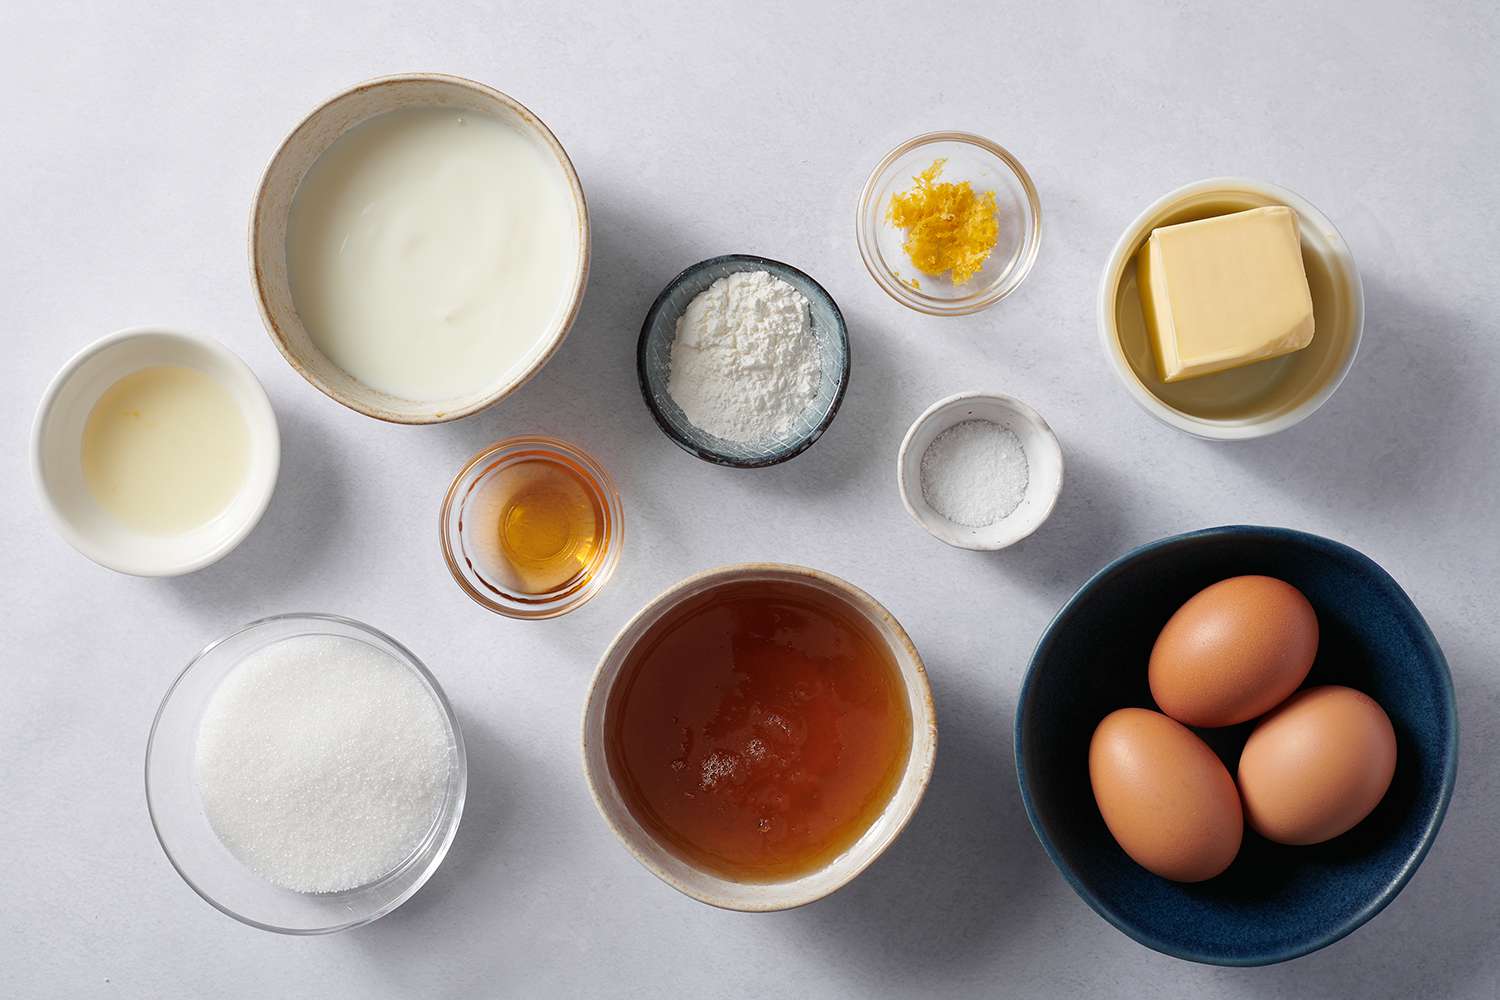 ingredients to make honey pie filling